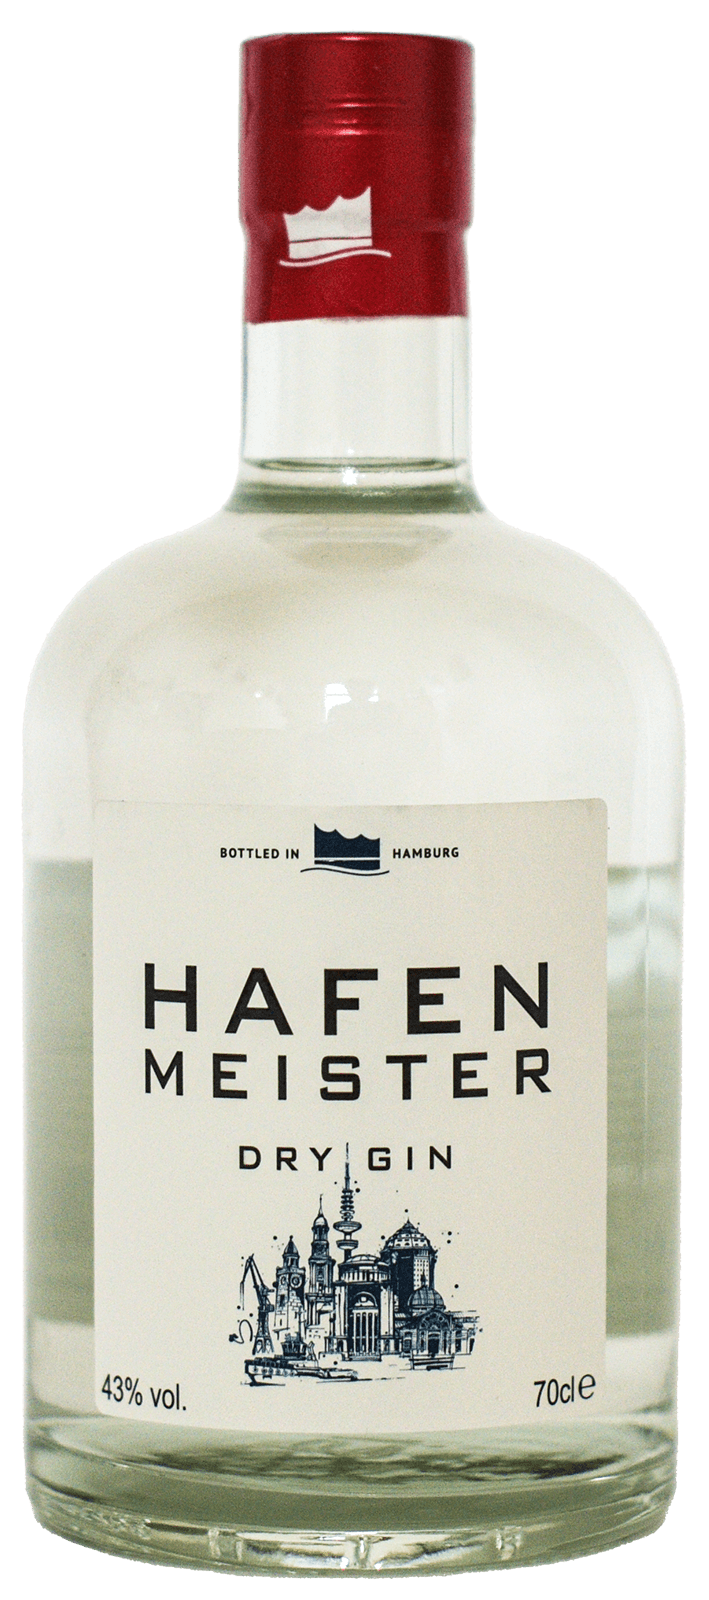 Bild des Hafenmeister Dry Gins, produziert von Mercurius Drinks Company, mit deutlicher Darstellung der Flasche und des Labels, hervorragender deutscher Gin aus Hamburg